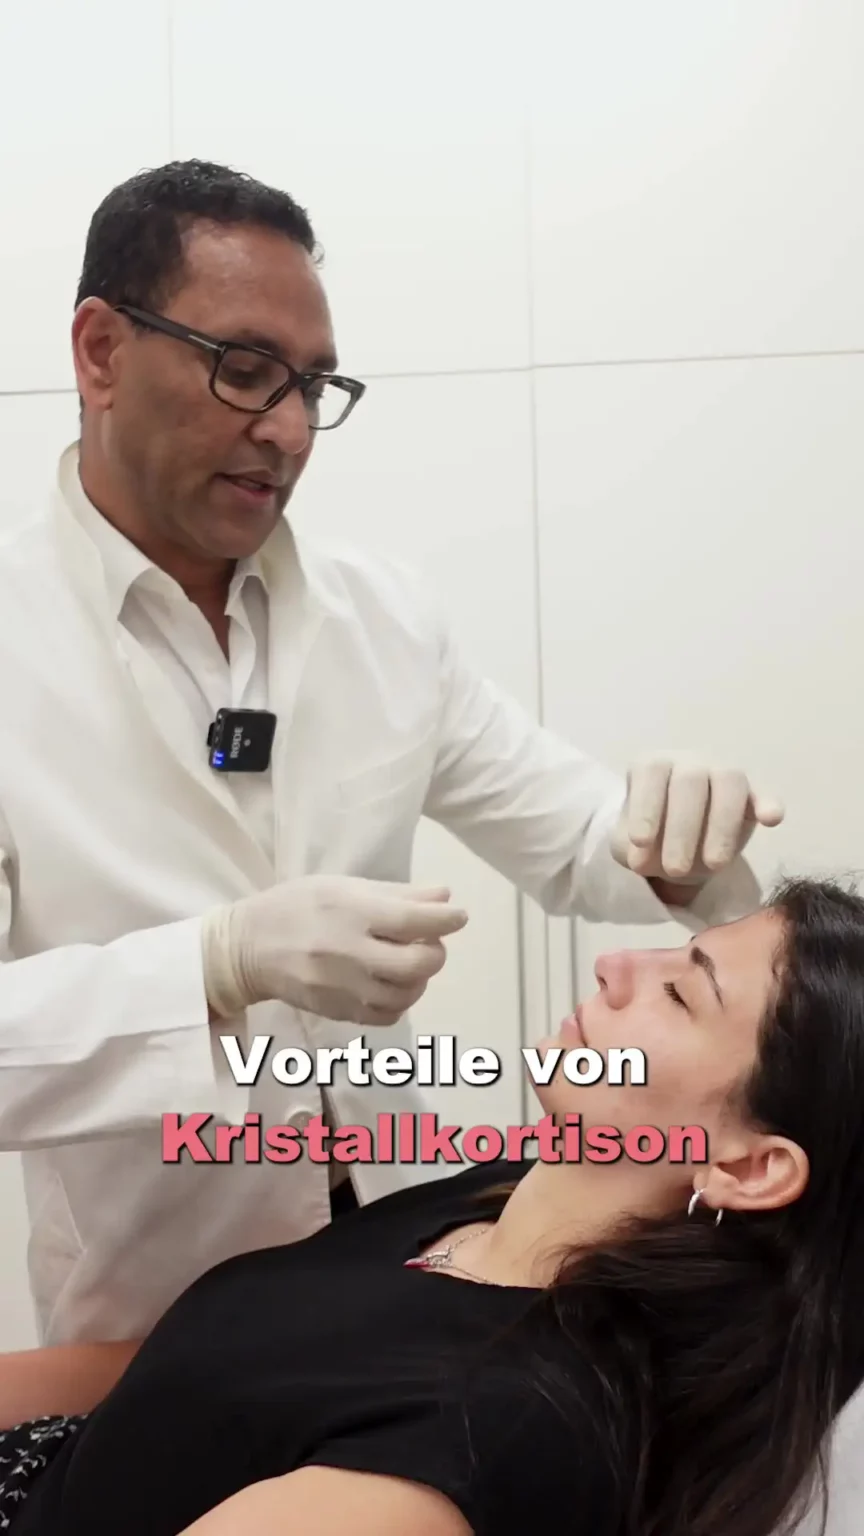 Aufnahme von Herr Elzebair während der Behandlung einer Patientin mit dem Text "Vorteile von Kristallkortison".